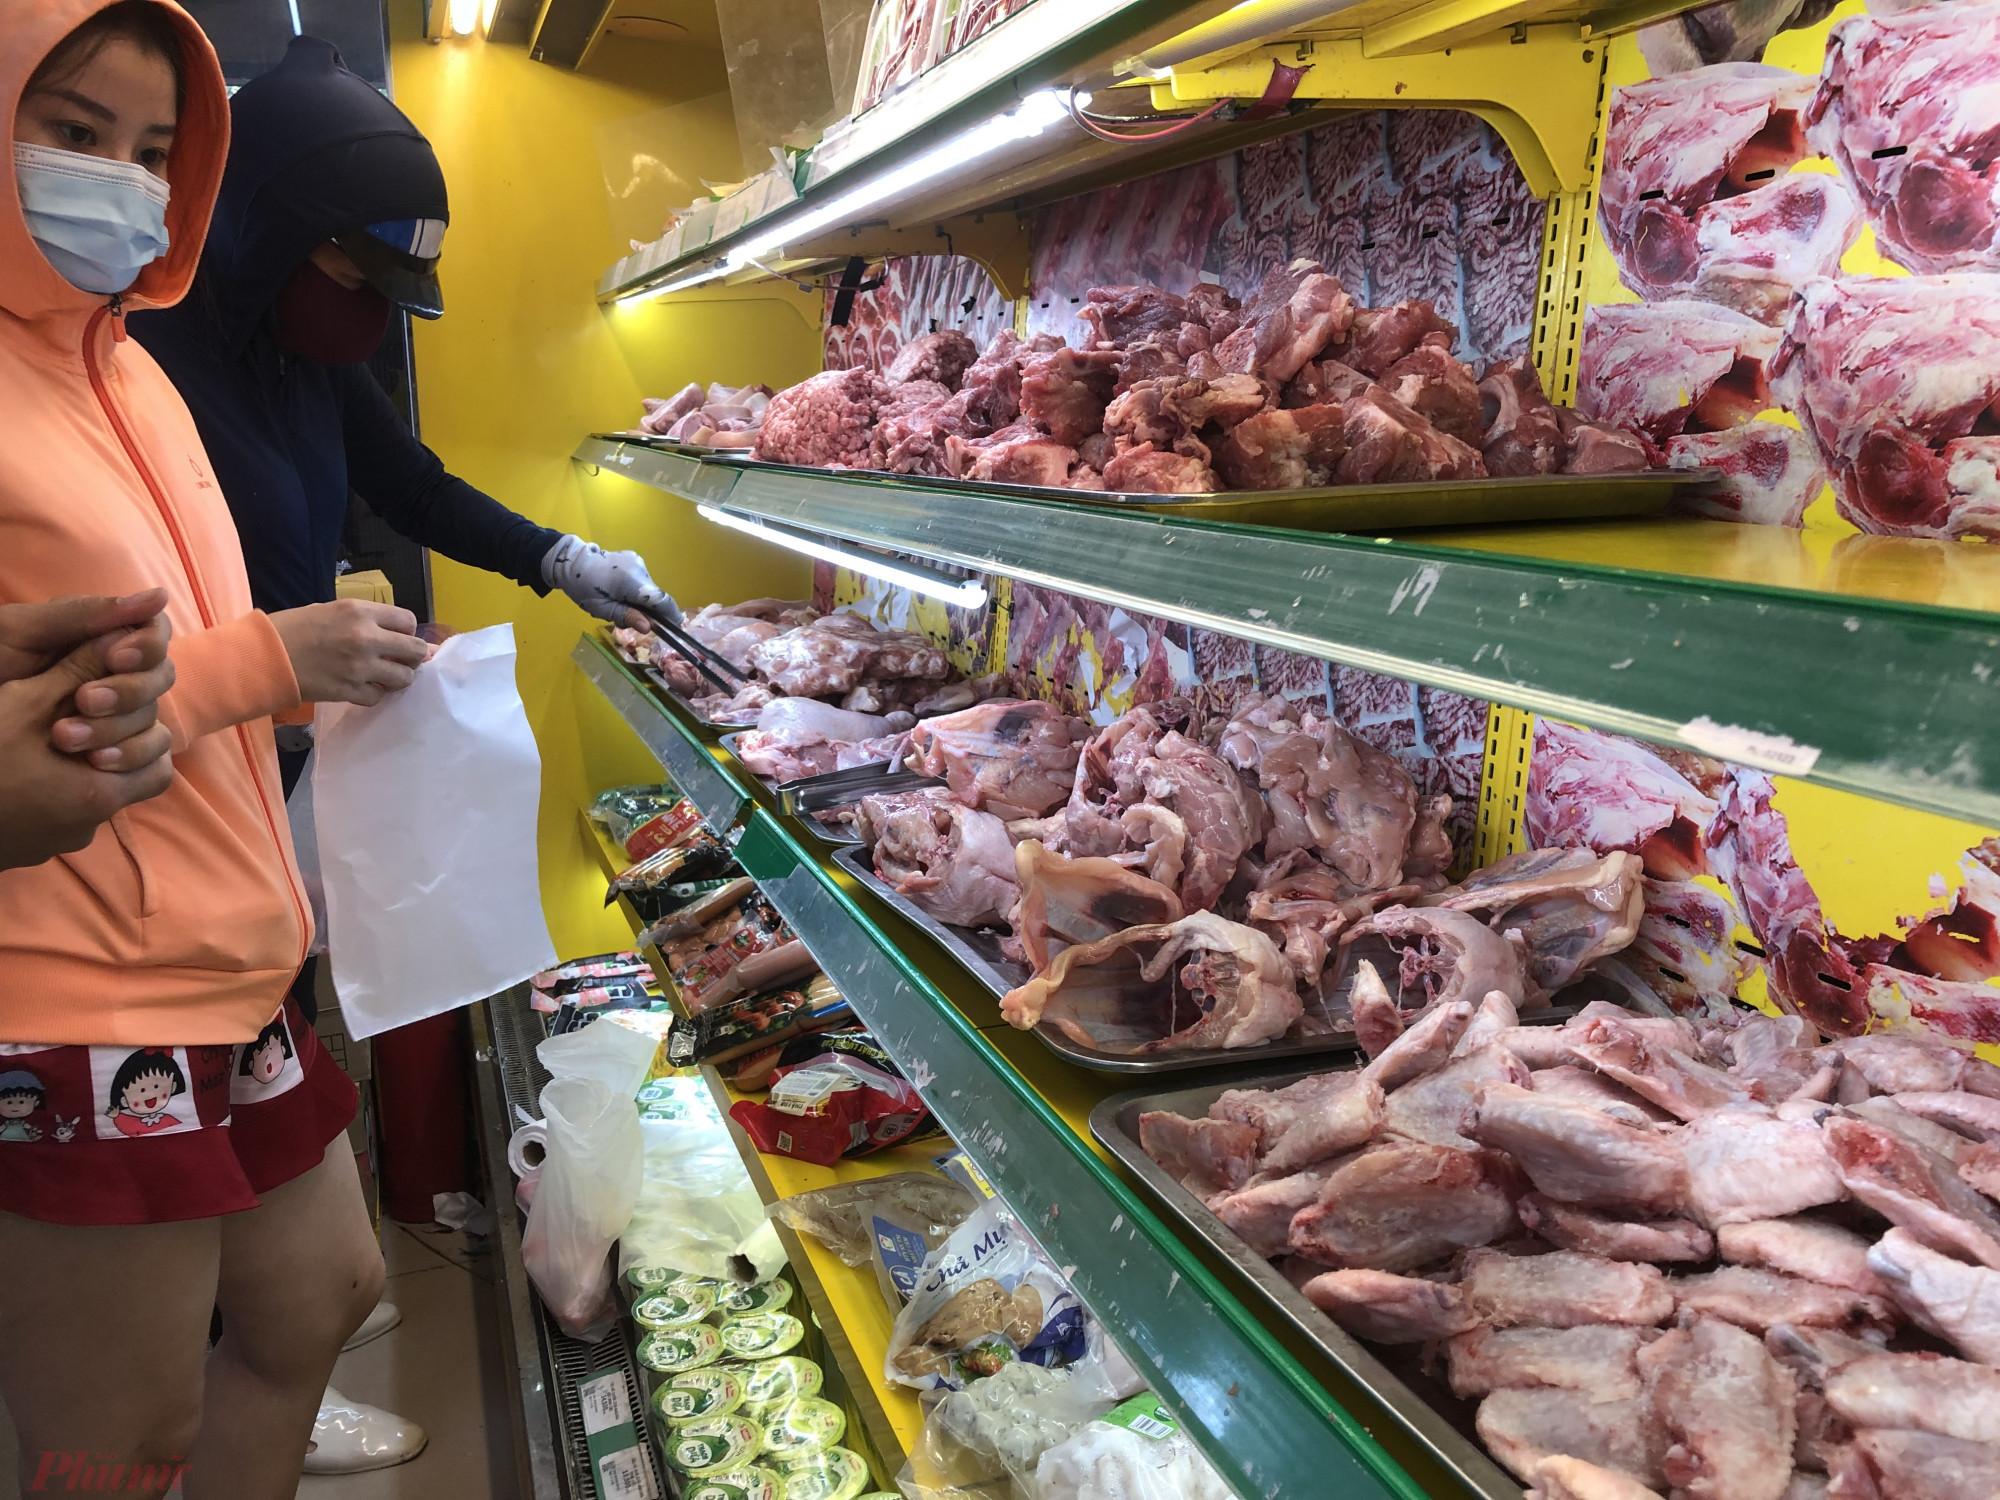 Giá thịt heo, gà tại khu vực Đông Nam bộ thời gian qua giảm mạnh do nguồn cung dồi dào, nhưng các siêu thị,cửa hàng tại TPHCM vẫn bán chủ yếu là thịt nhập khẩu